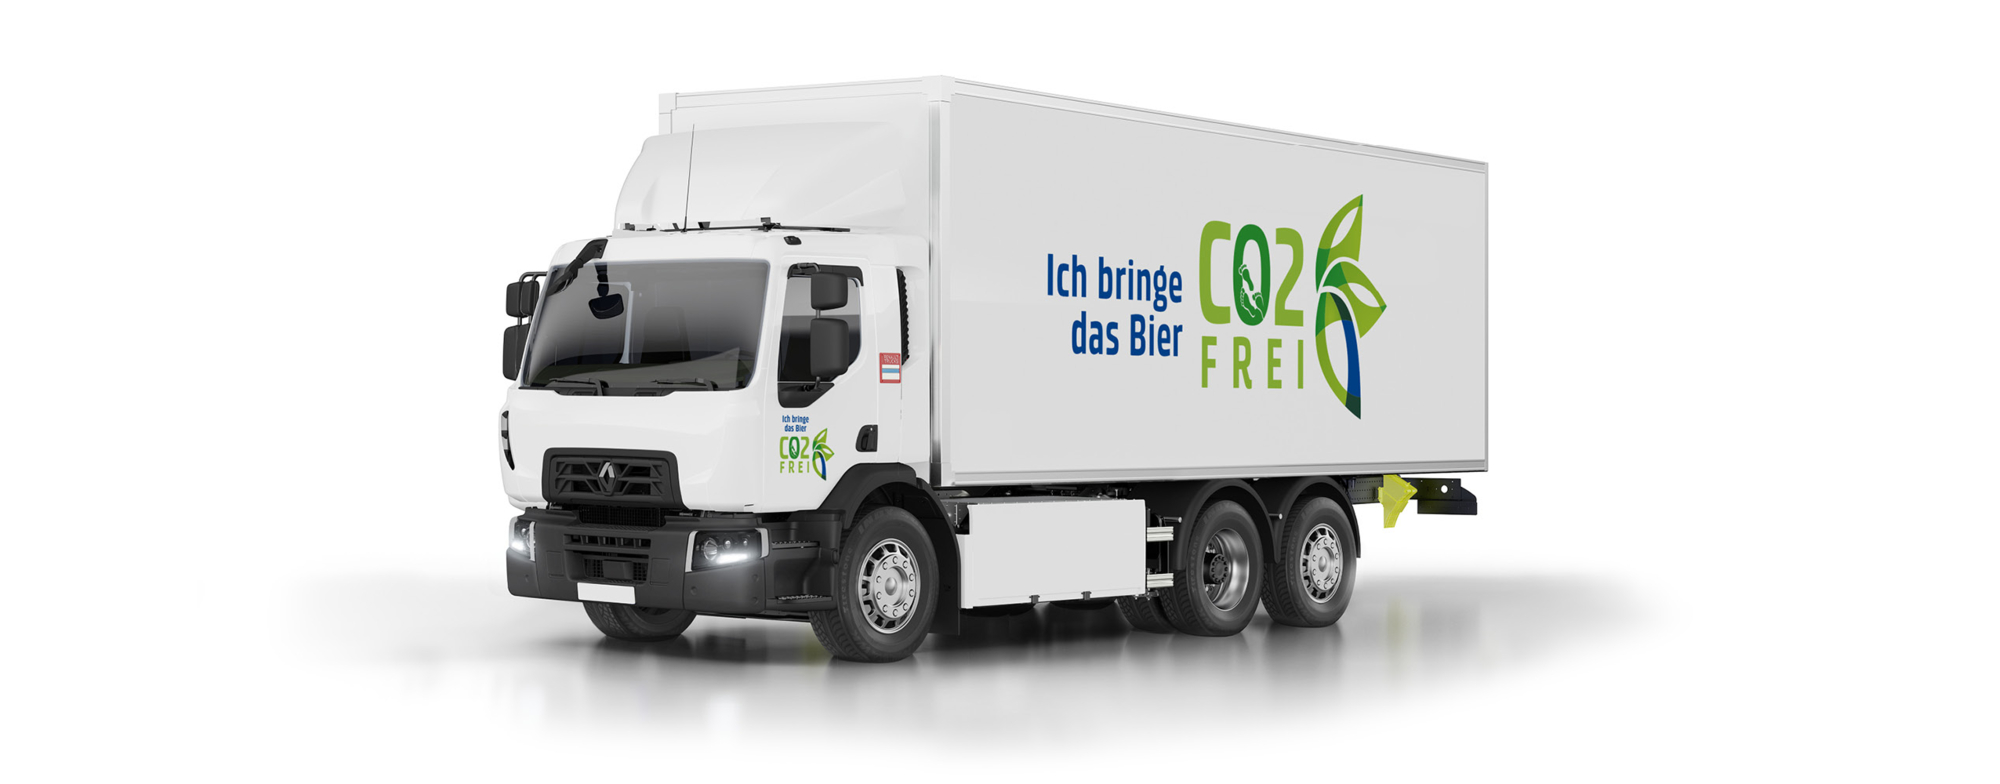 pb-rt-elektrische-trucks-carlsberg-groep-2560.jpg